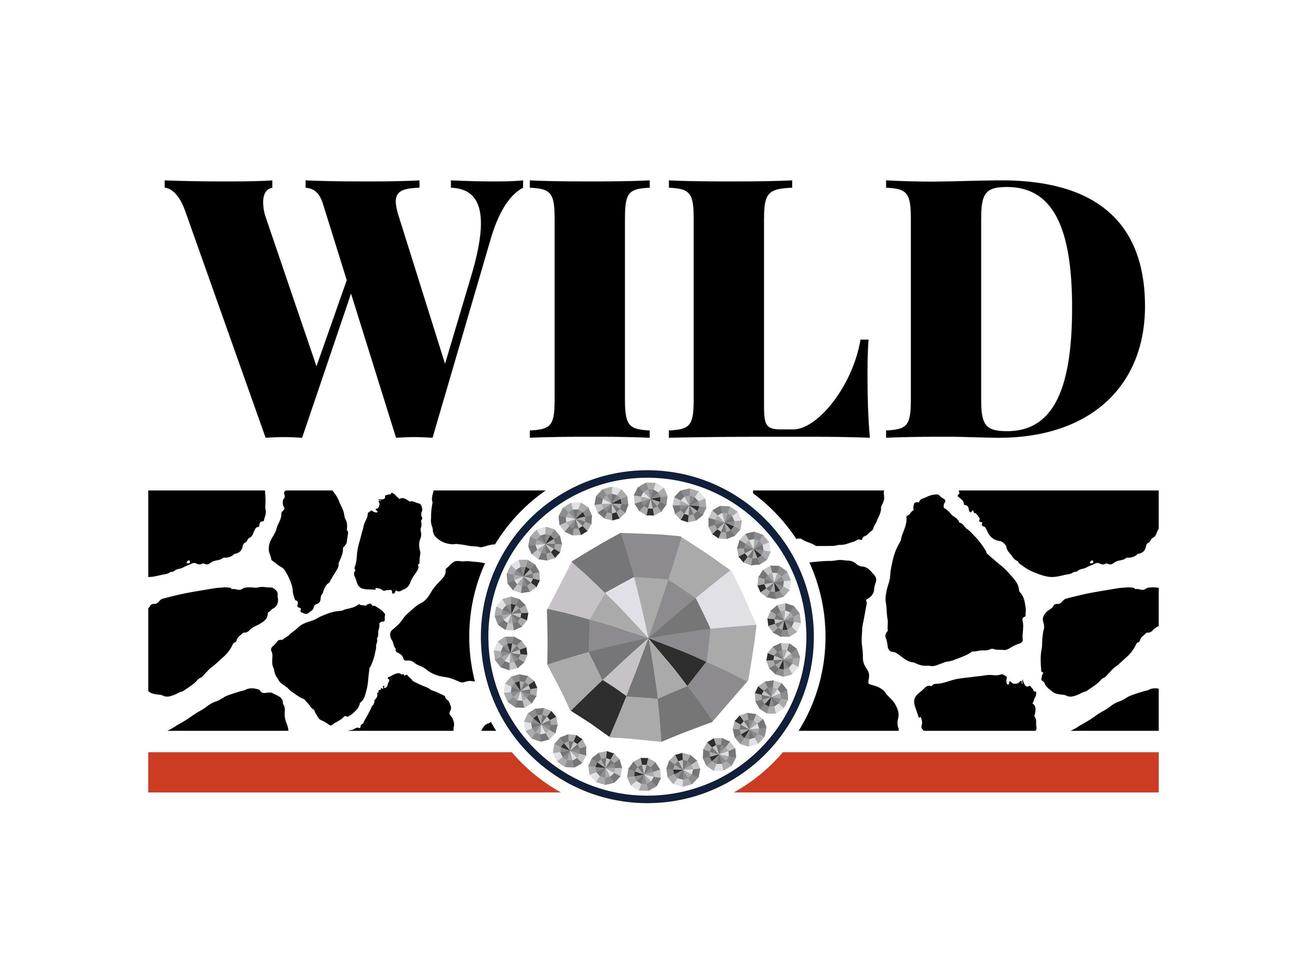 dekorativer Wildtext mit Giraffenmuster, Mode-, Karten- und Posterdruck-Slogan vektor